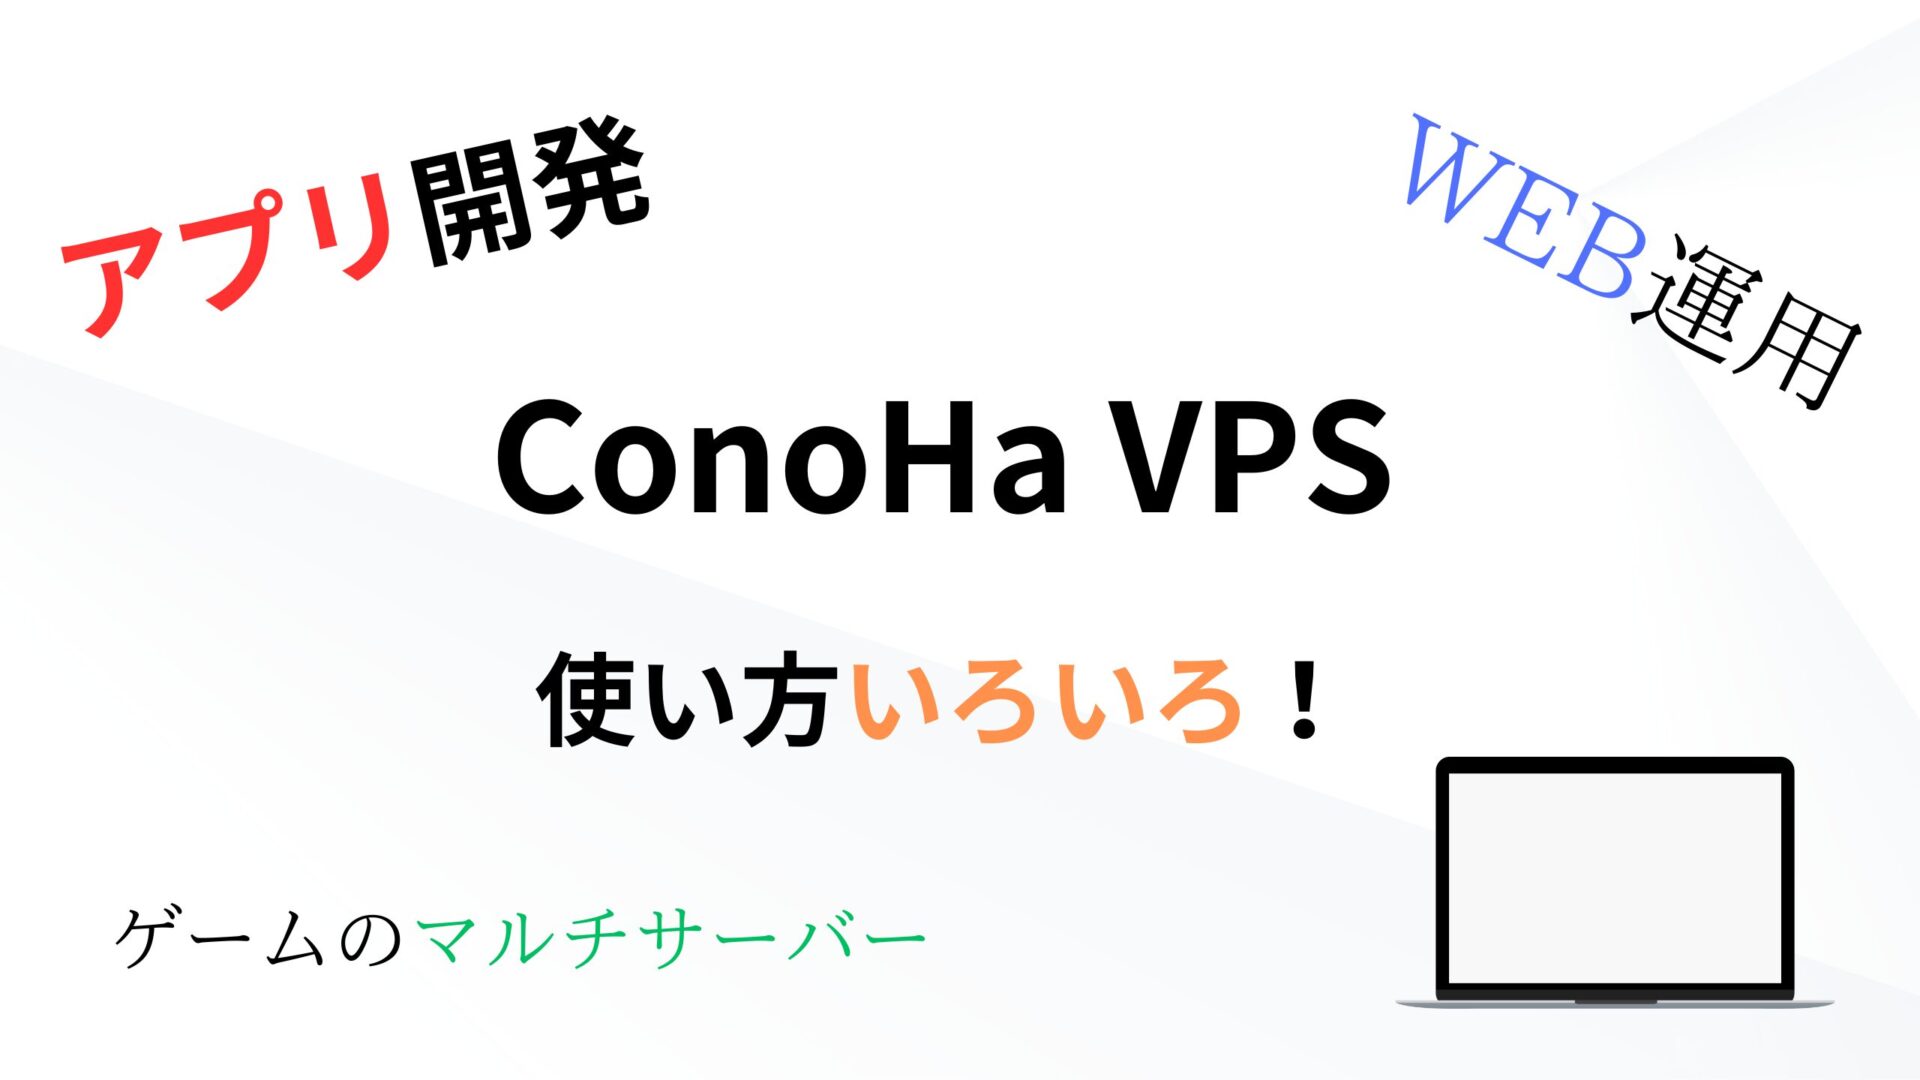 【ConoHa VPS】アプリ開発やWEB運用、ゲームのマルチサーバーなど使い方いろいろ！